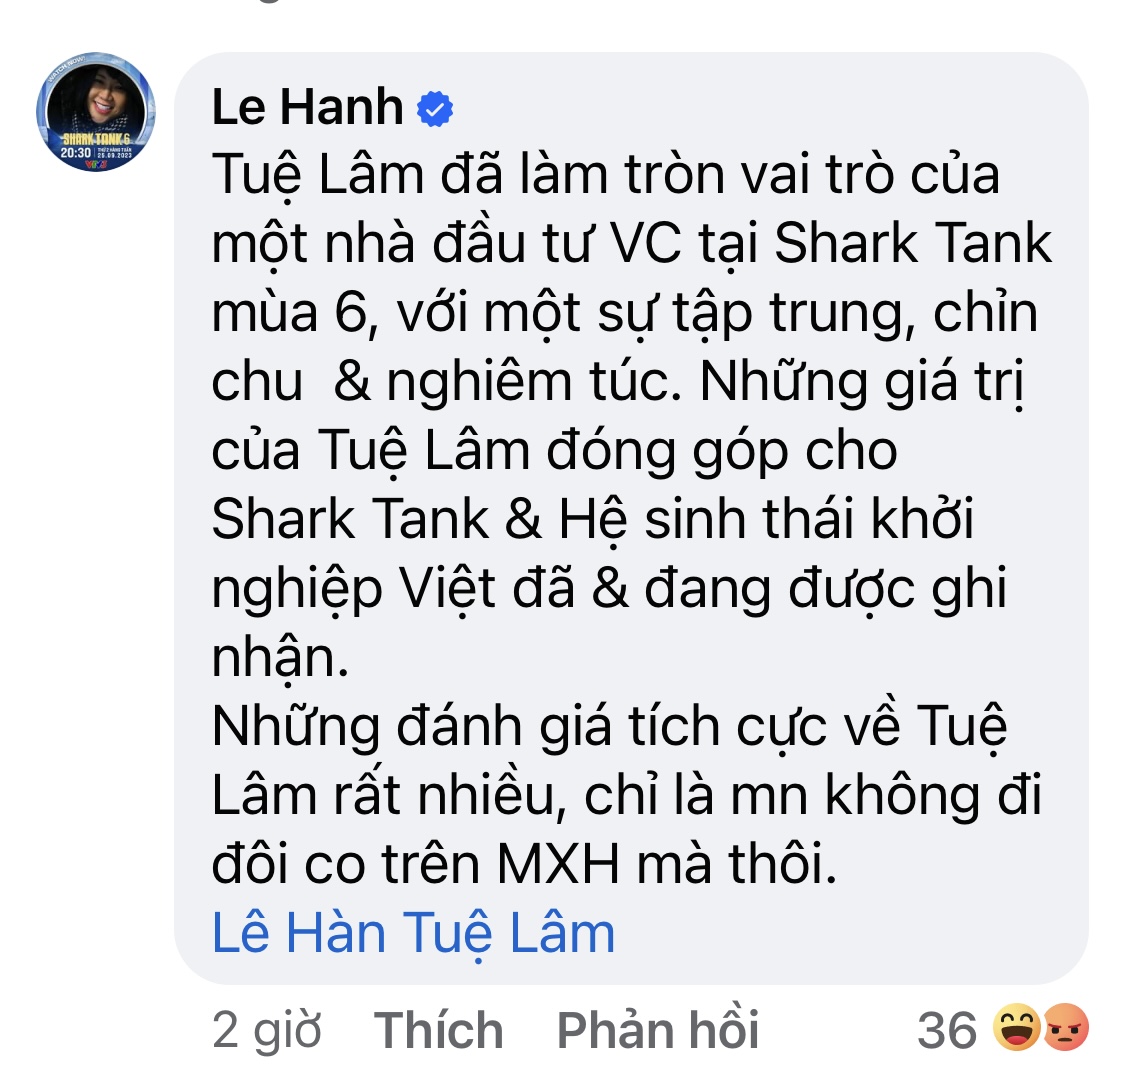 Sau ‘tâm thư’ của Shark Tuệ Lâm, Giám đốc sản xuất Shark Tank lên tiếng, vợ cũ Shark Bình chia sẻ cực thấm! - Ảnh 2.